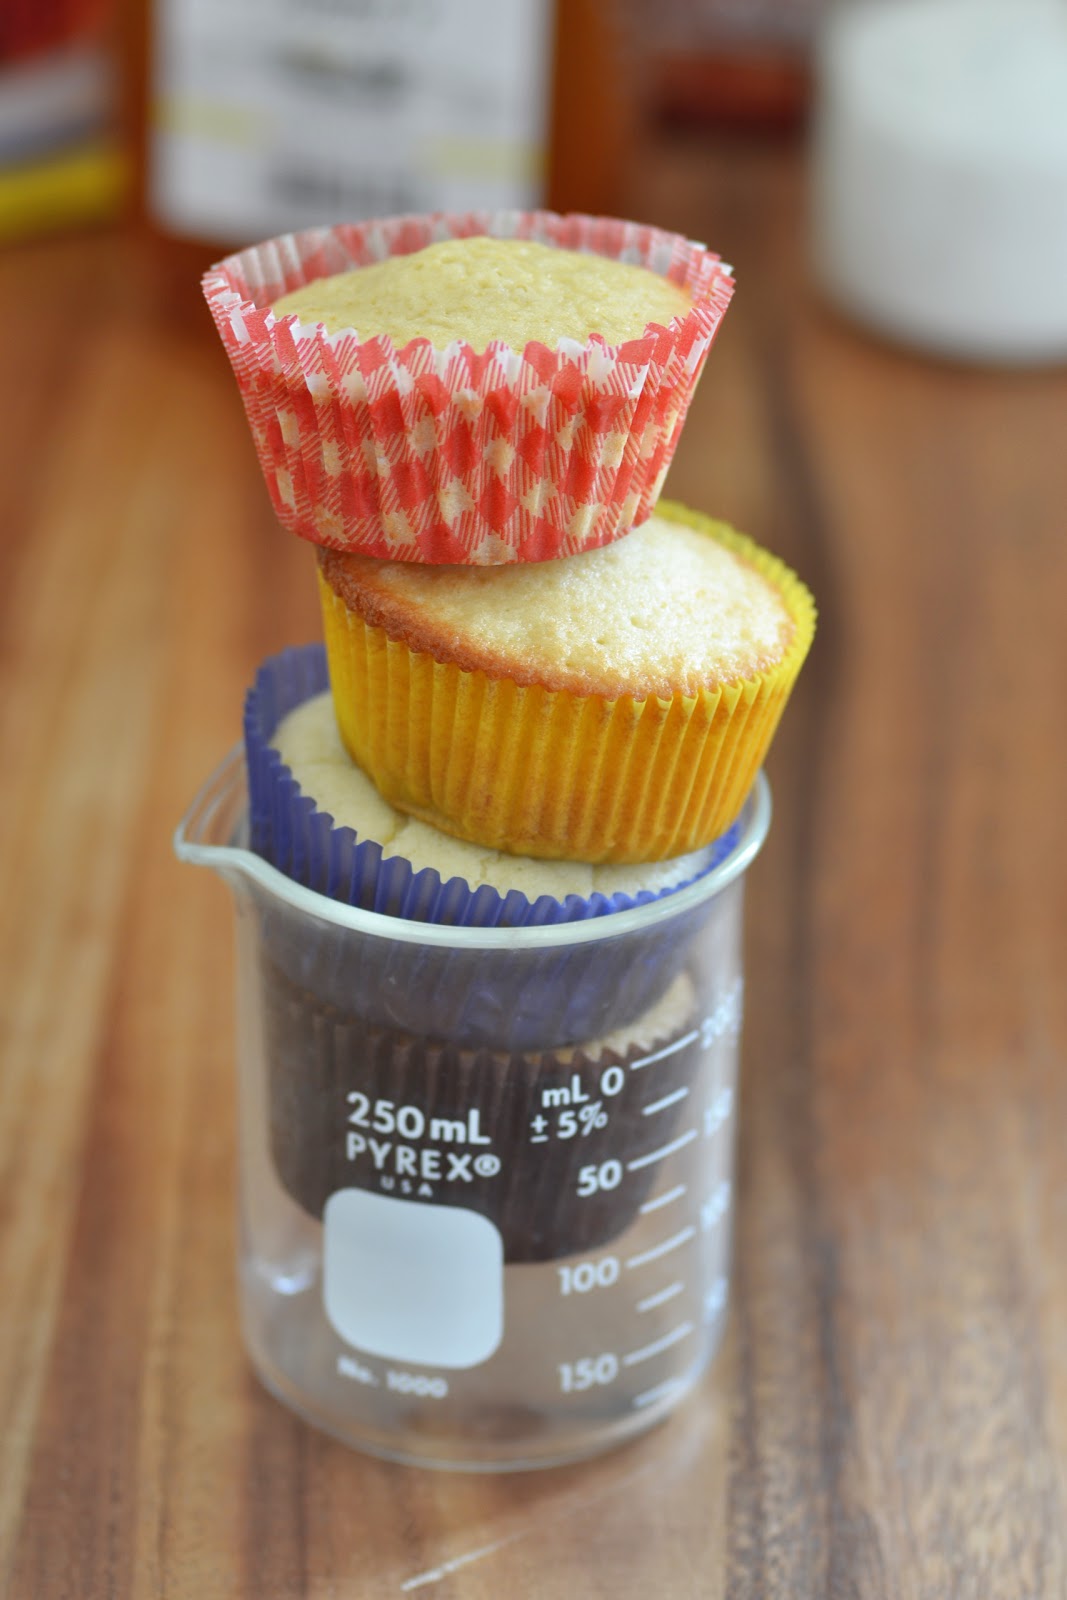 http://1.bp.blogspot.com/-iHNKnxfBJTQ/UJb-13ZQToI/AAAAAAAABc0/gu06vXY53vc/s1600/baking-experiment-sweeteners-1.JPG